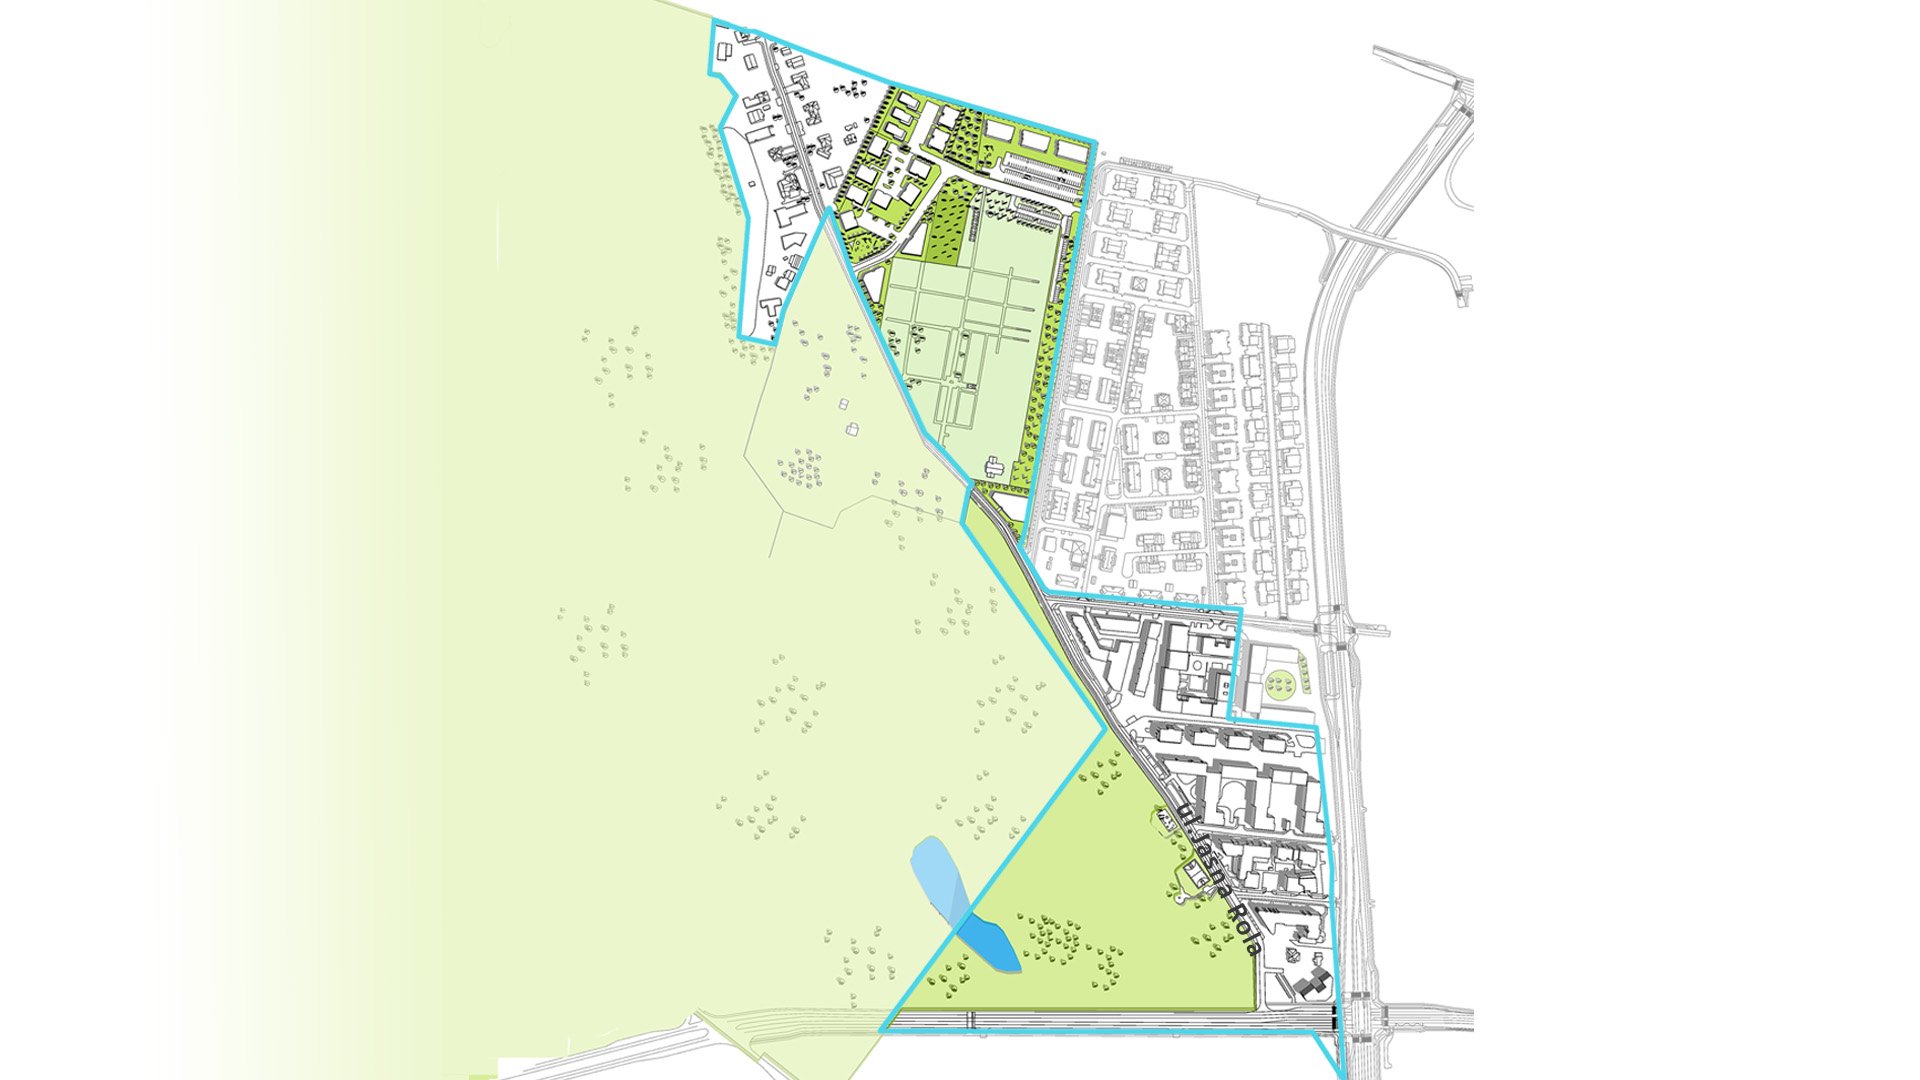 Wizualizacja. Propozycja zagospodarowania terenu wg projektu planu miejscowego. Model przedstawia bryły istniejącej i projektowanej zabudowy, planowany układ komunikacyjny oraz podkreślone kolorem zielonym tereny zieleni i drzewa. - grafika artykułu